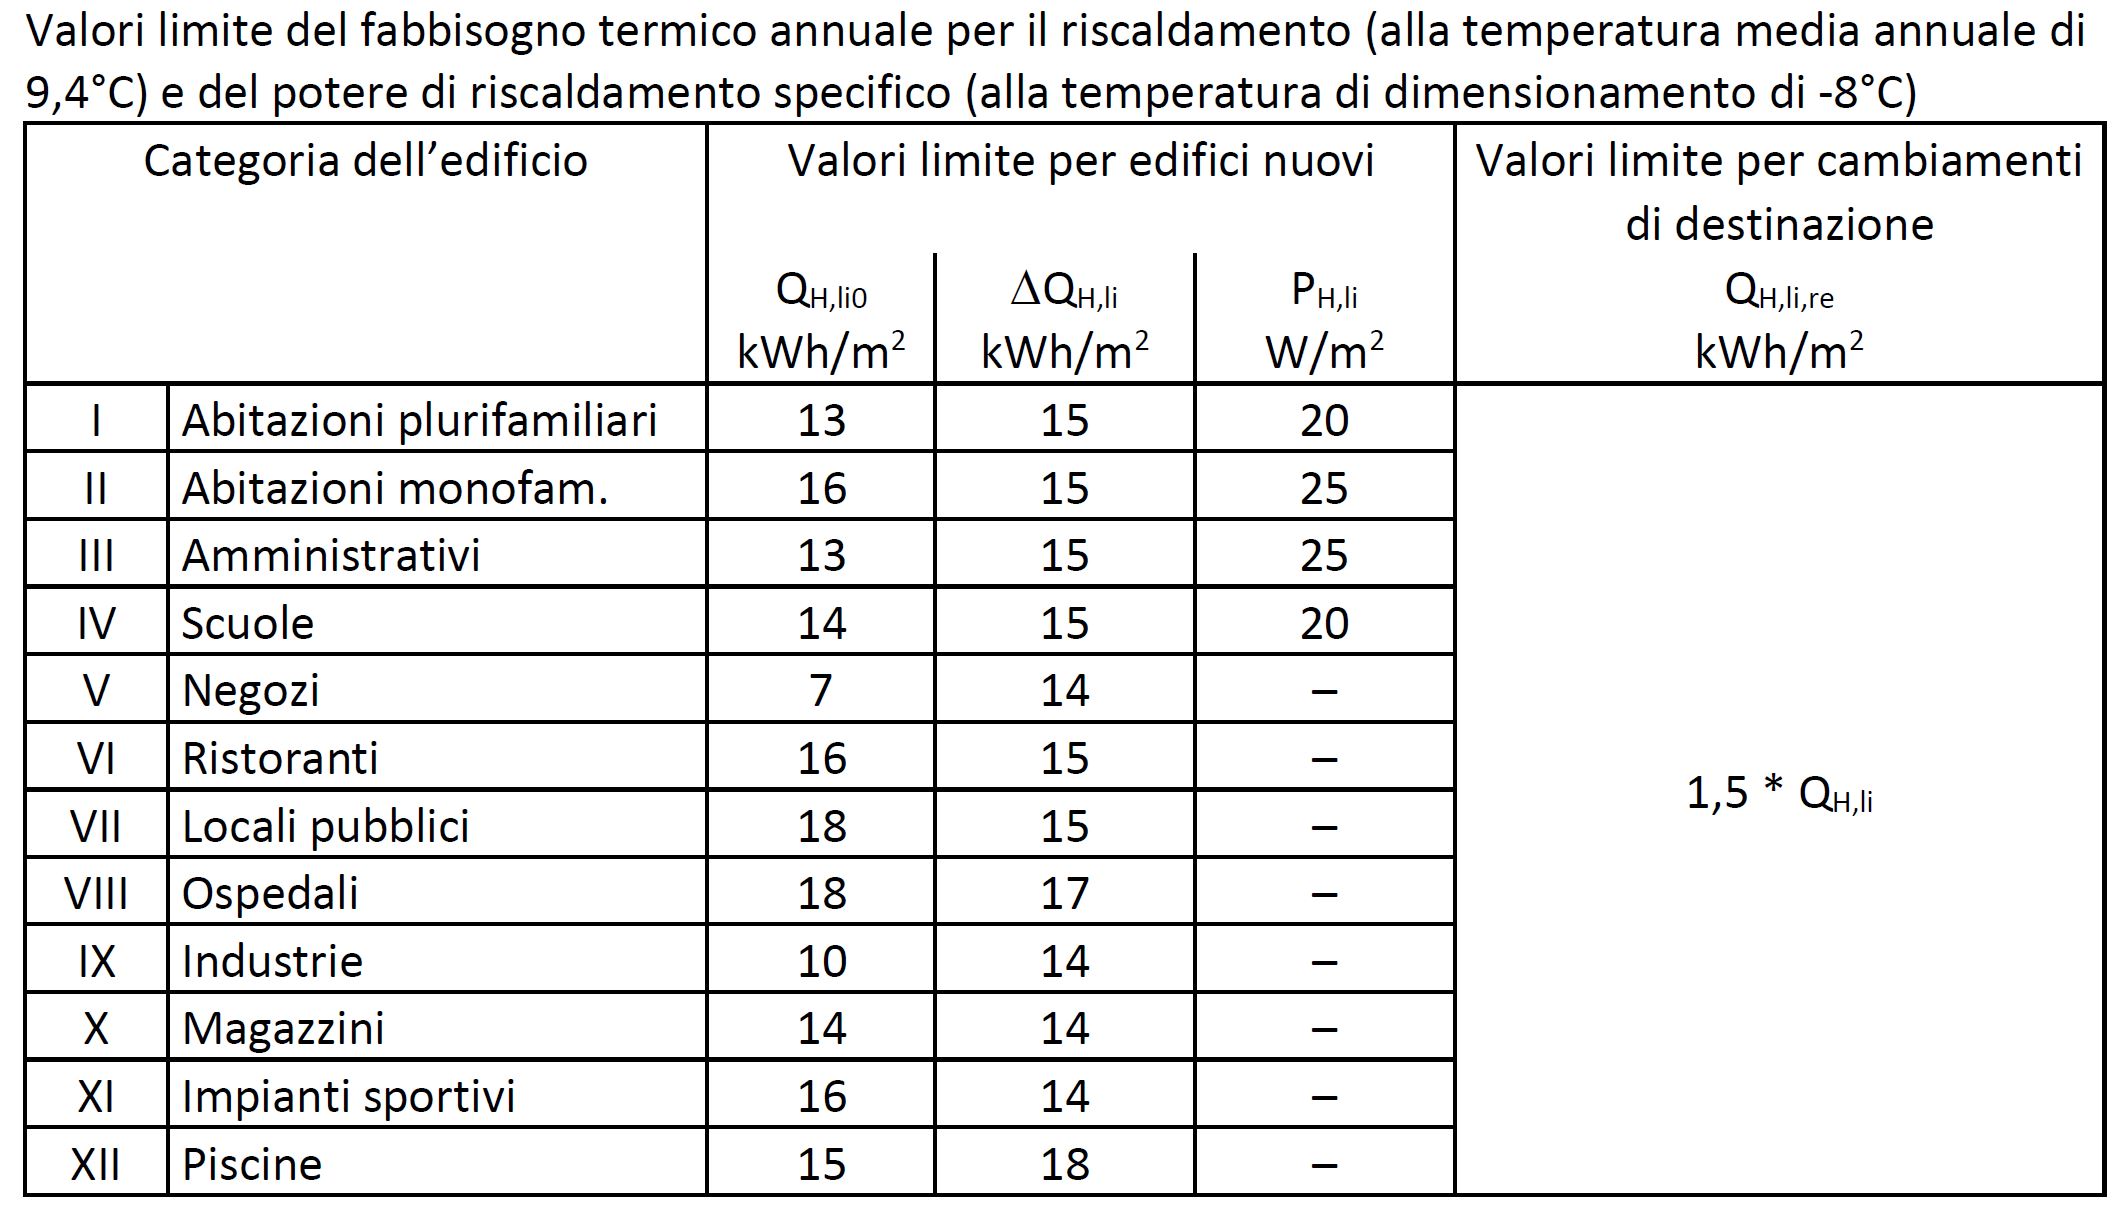 Valori limite del fabbisogno termico annuale per il riscaldamento degli edifici nuovi, toccati da trasformazione o da cambiamenti di destinazione (Art. 1.7 cpv. 2)